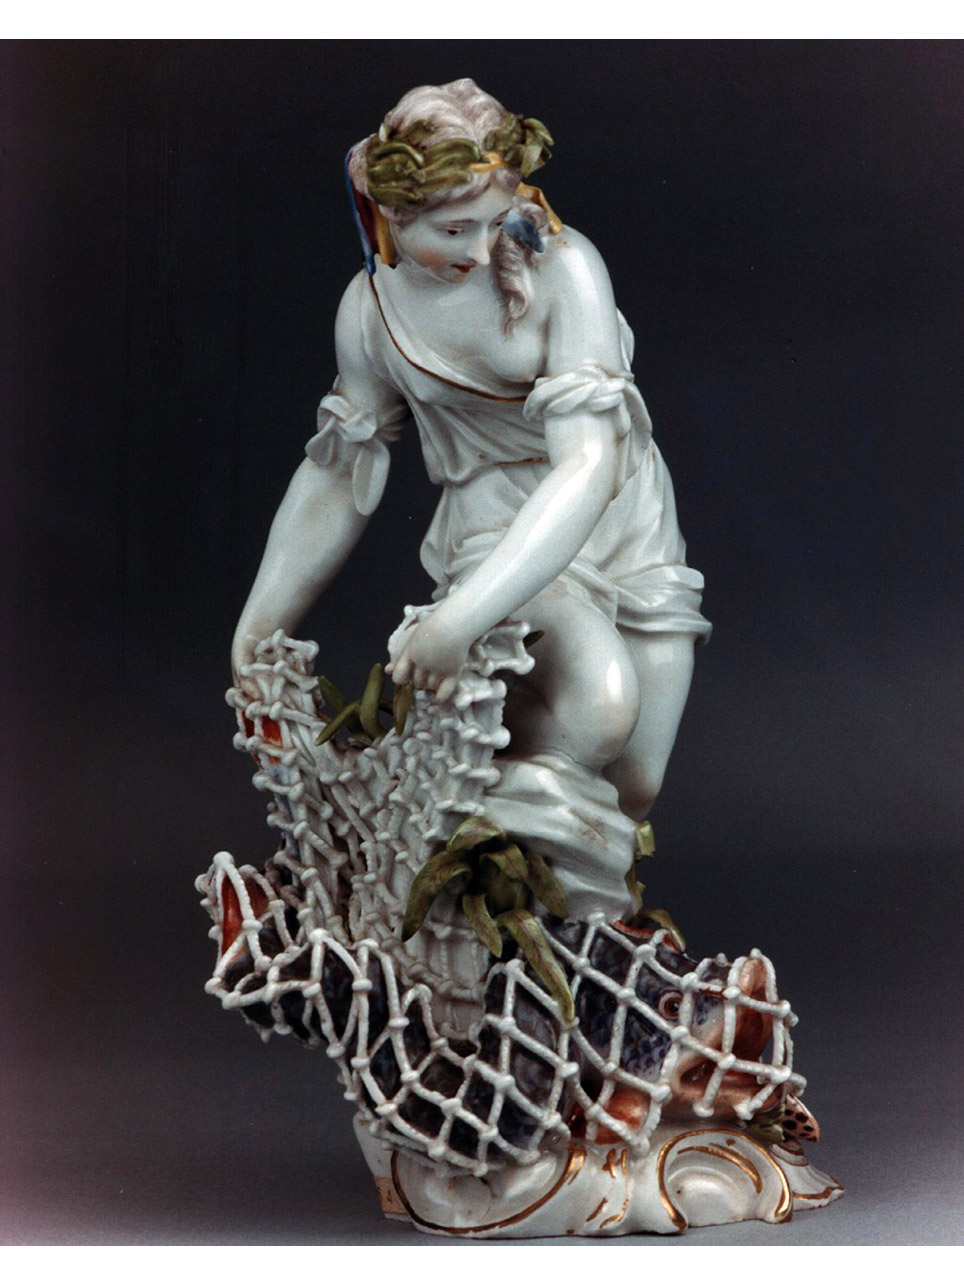 pescatrice con la rete statuetta, ca 1764 - ca 1770